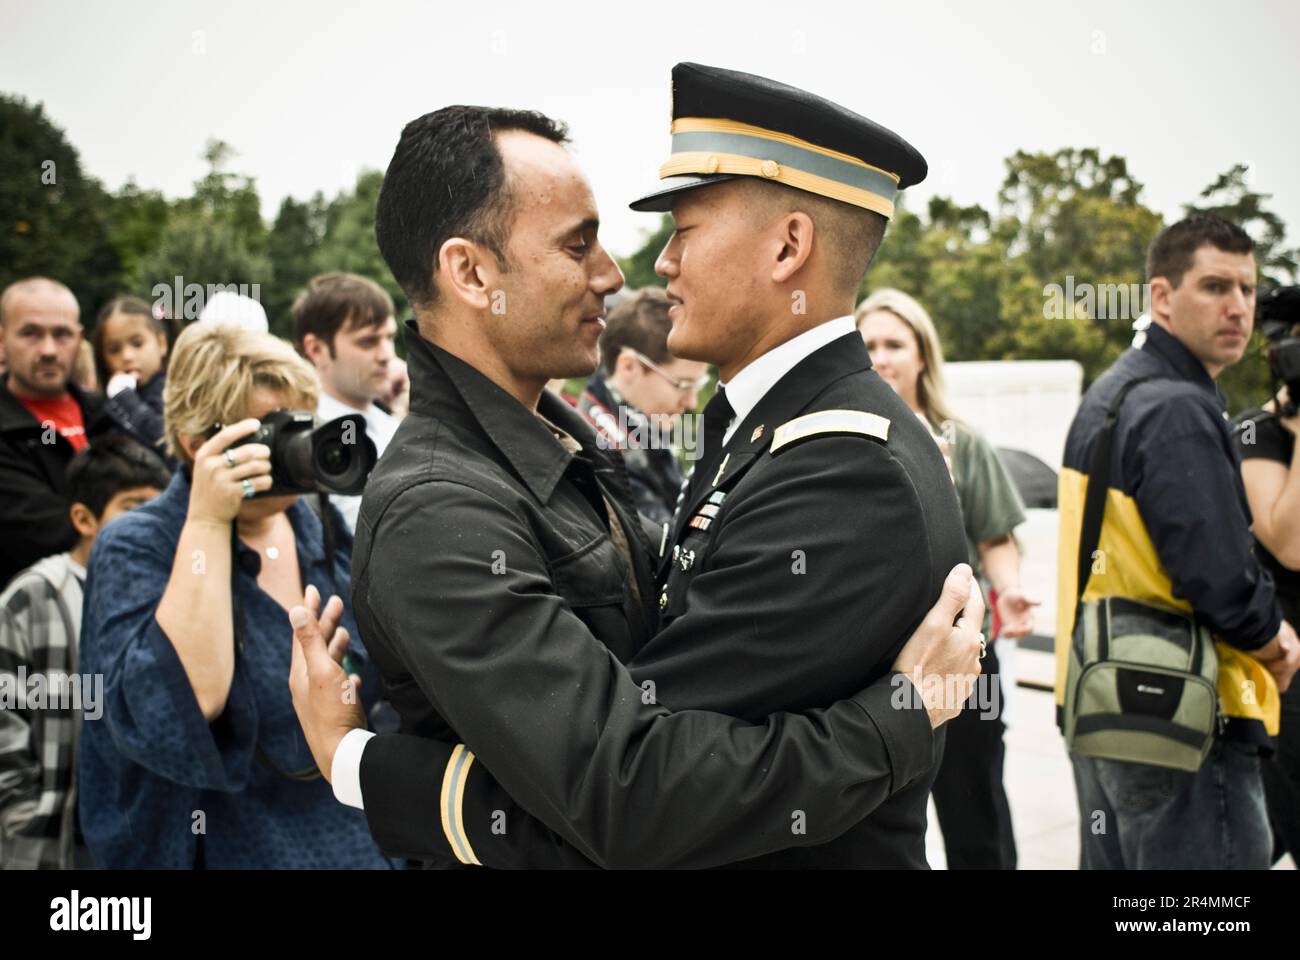 Un ex tenente dell'esercito che è stato dimesso dall'esercito dopo aver ammesso di essere gay sta combattendo per abrogare l'atto "non chiedere... non dire". Egli è con l'organizzazione, 'Cavalieri Foto Stock